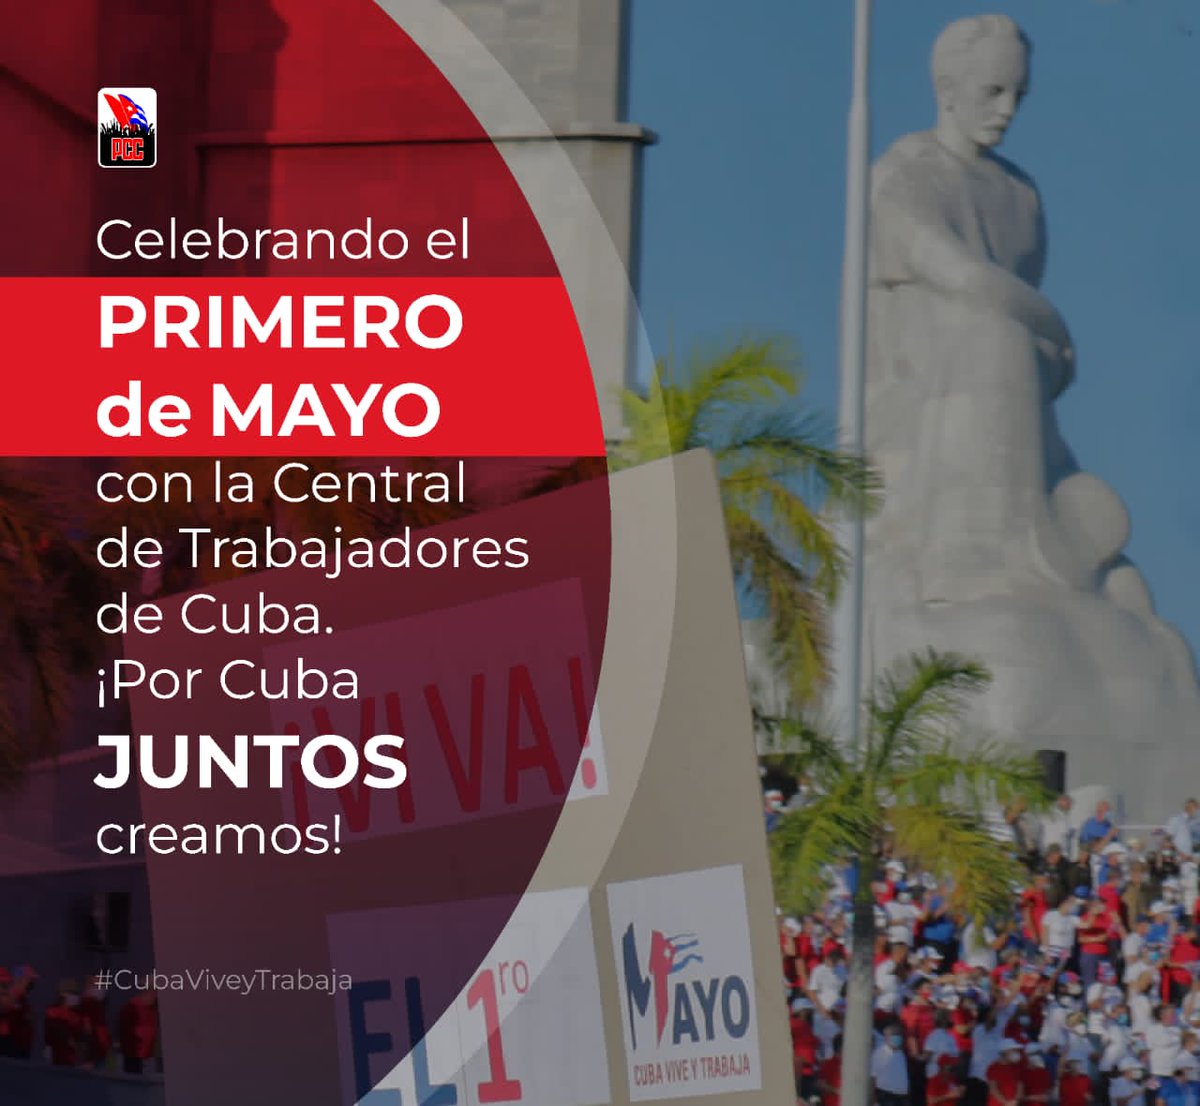 Saludamos el 1ro. de Mayo “Día de los Trabajadores” con el compromiso de defender las conquistas de la Revolución🇨🇺, enfrentar las agresiones yanquis🇺🇸 y superar las dificultades económicas con la firme voluntad y apoyo de nuestro pueblo. #PorCubaJuntosCreamos #CubaCoopera